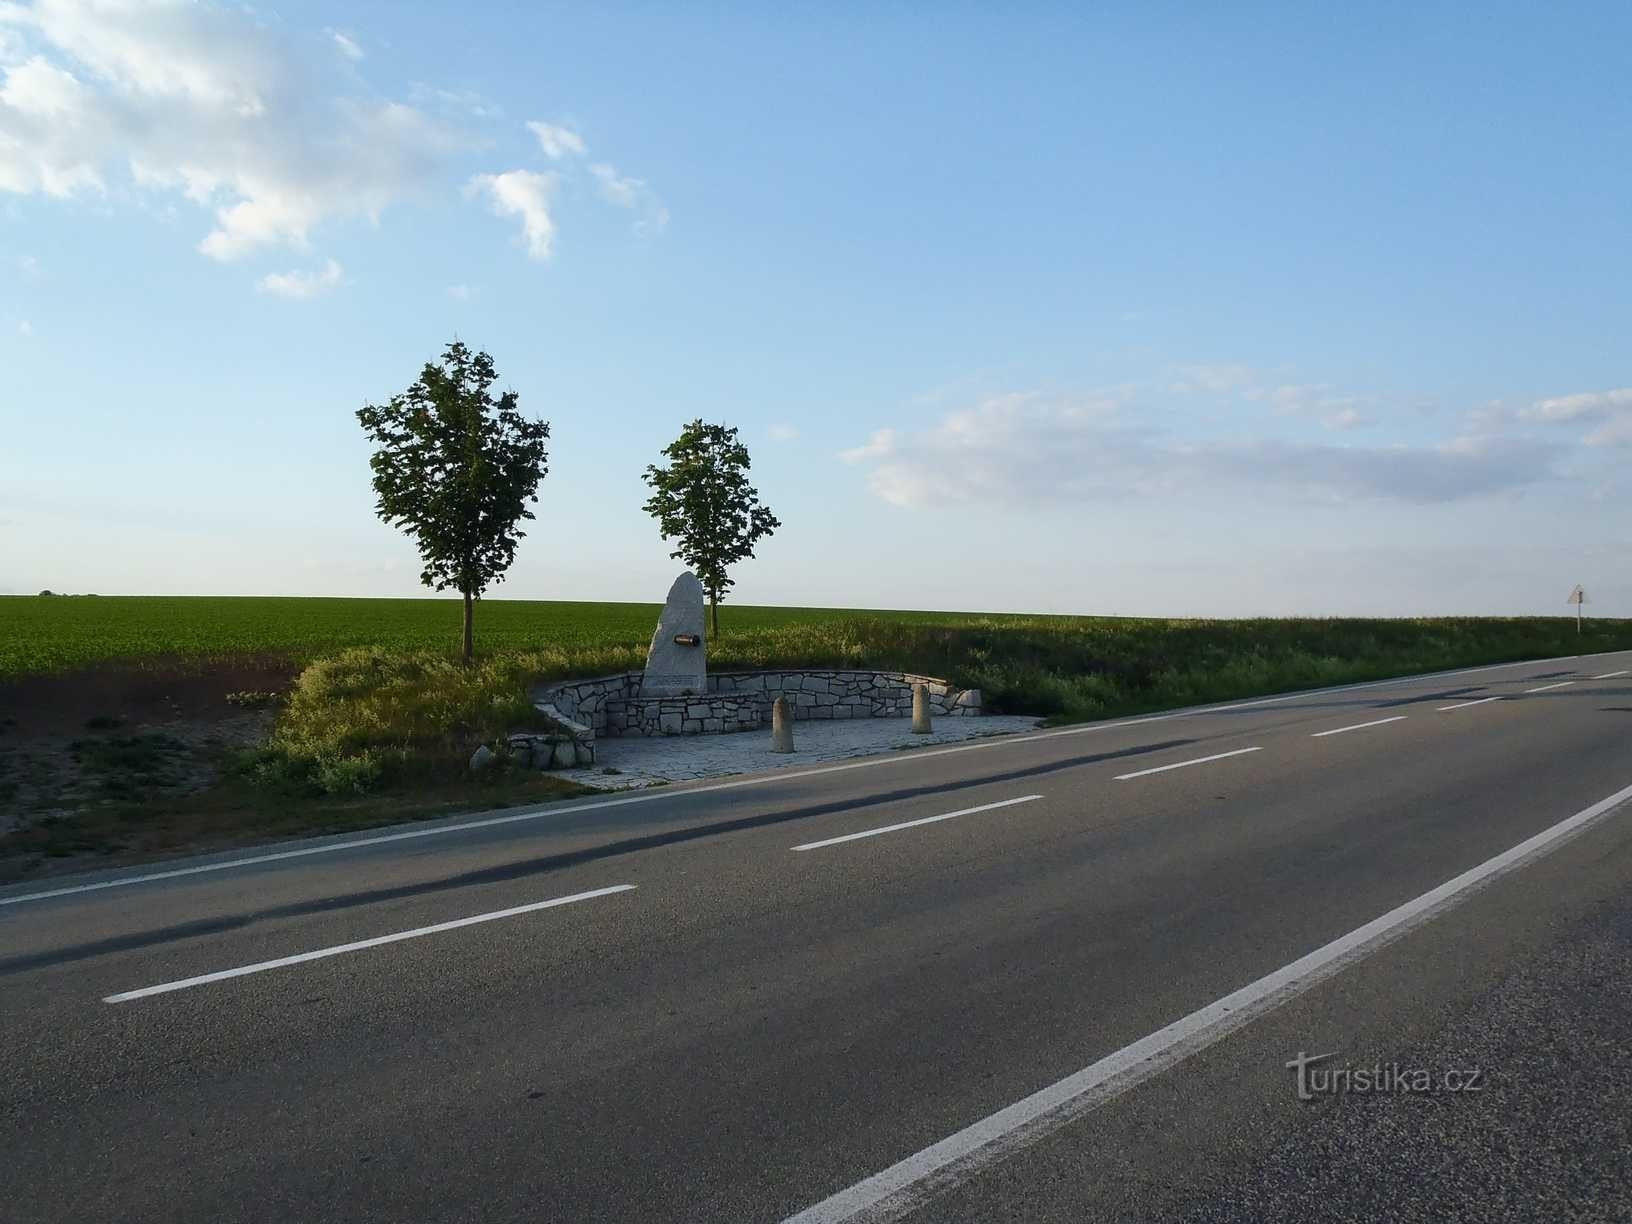 オーストリア砲兵の記念碑 - 25.5.2012 年 XNUMX 月 XNUMX 日